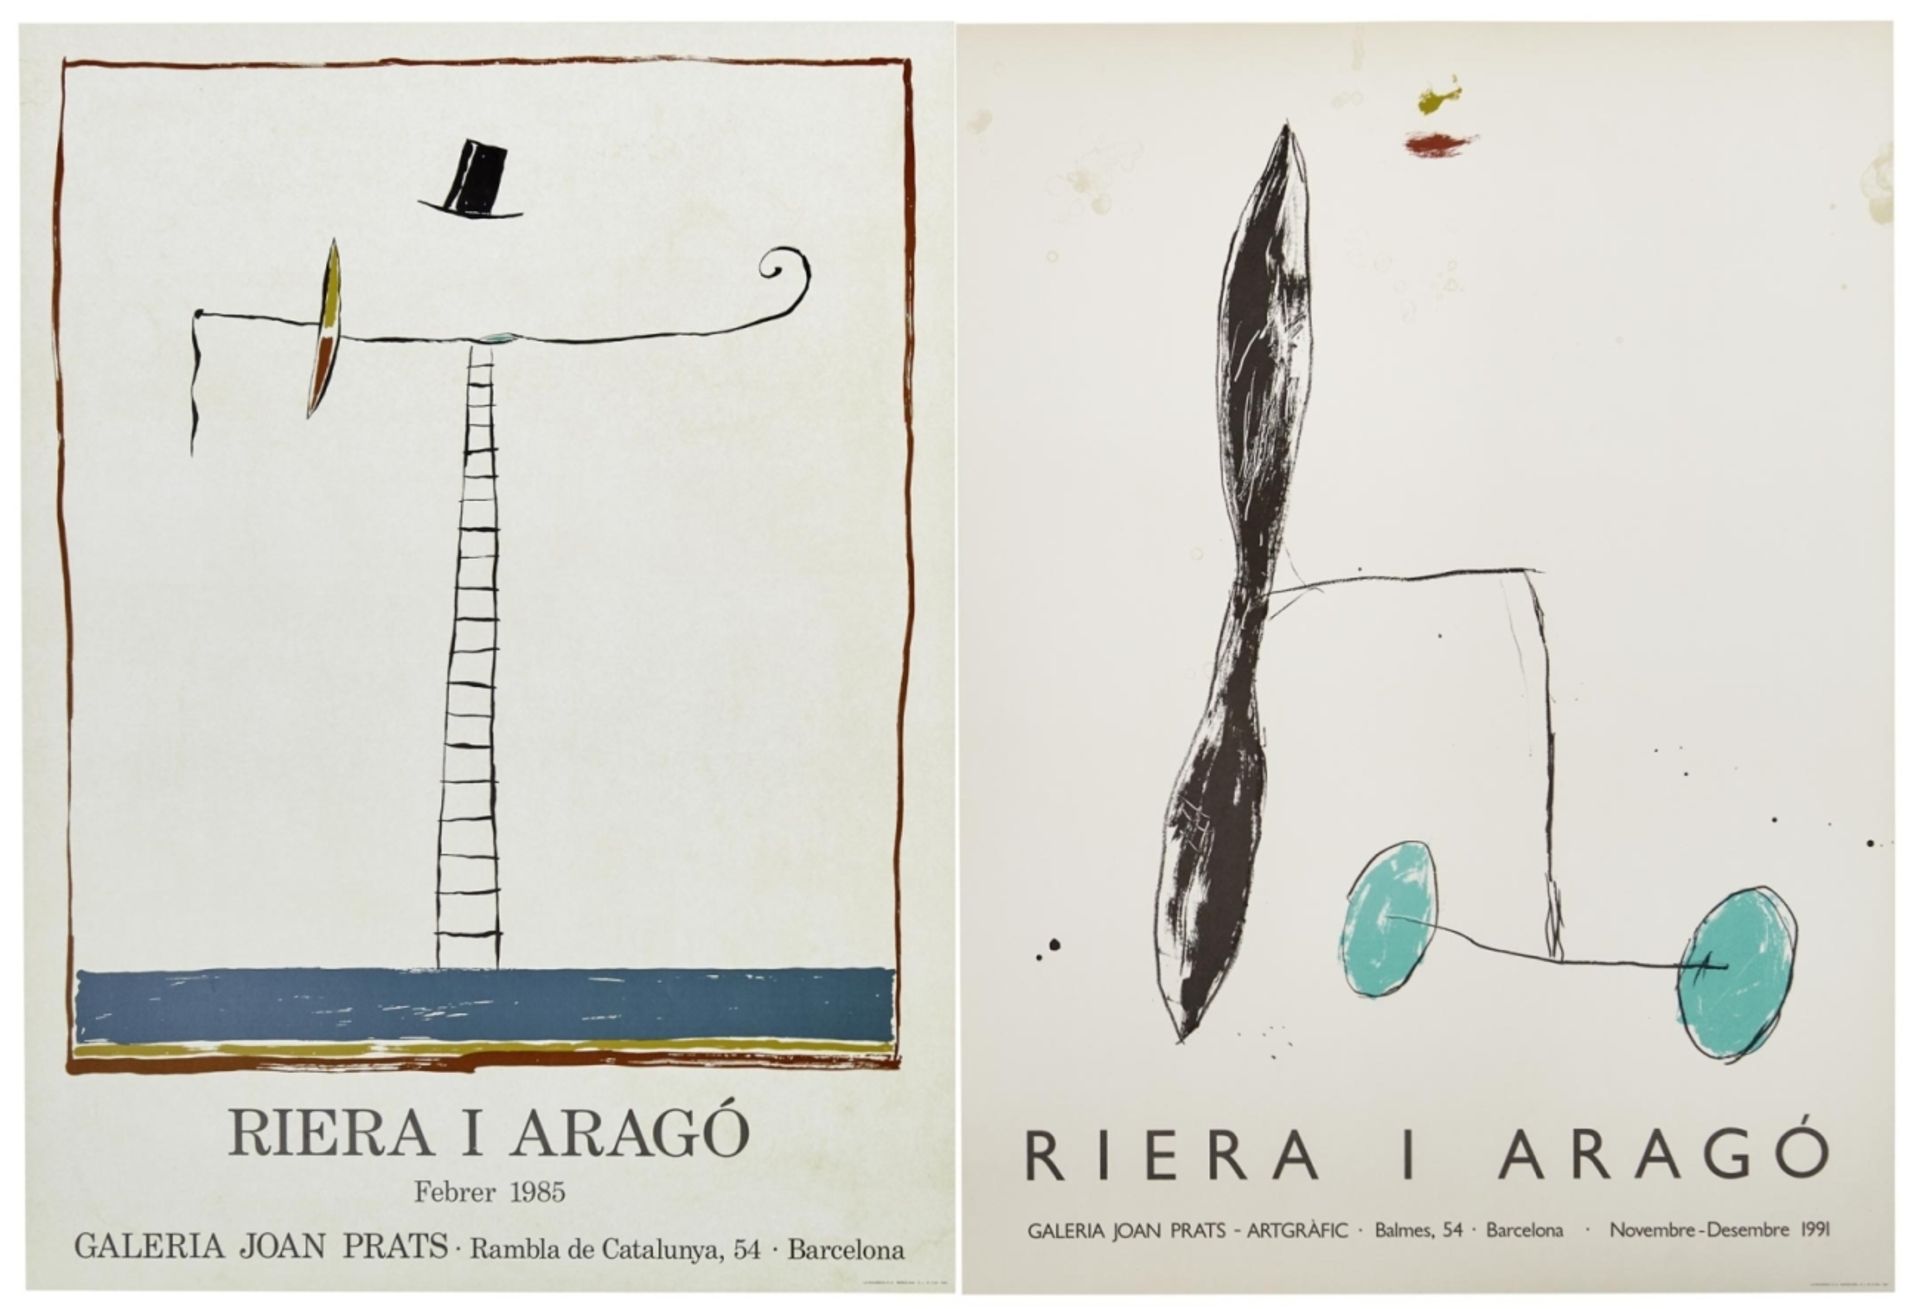 Riera i Arago, Josep Maria: Zwei Ausstellungsplakate